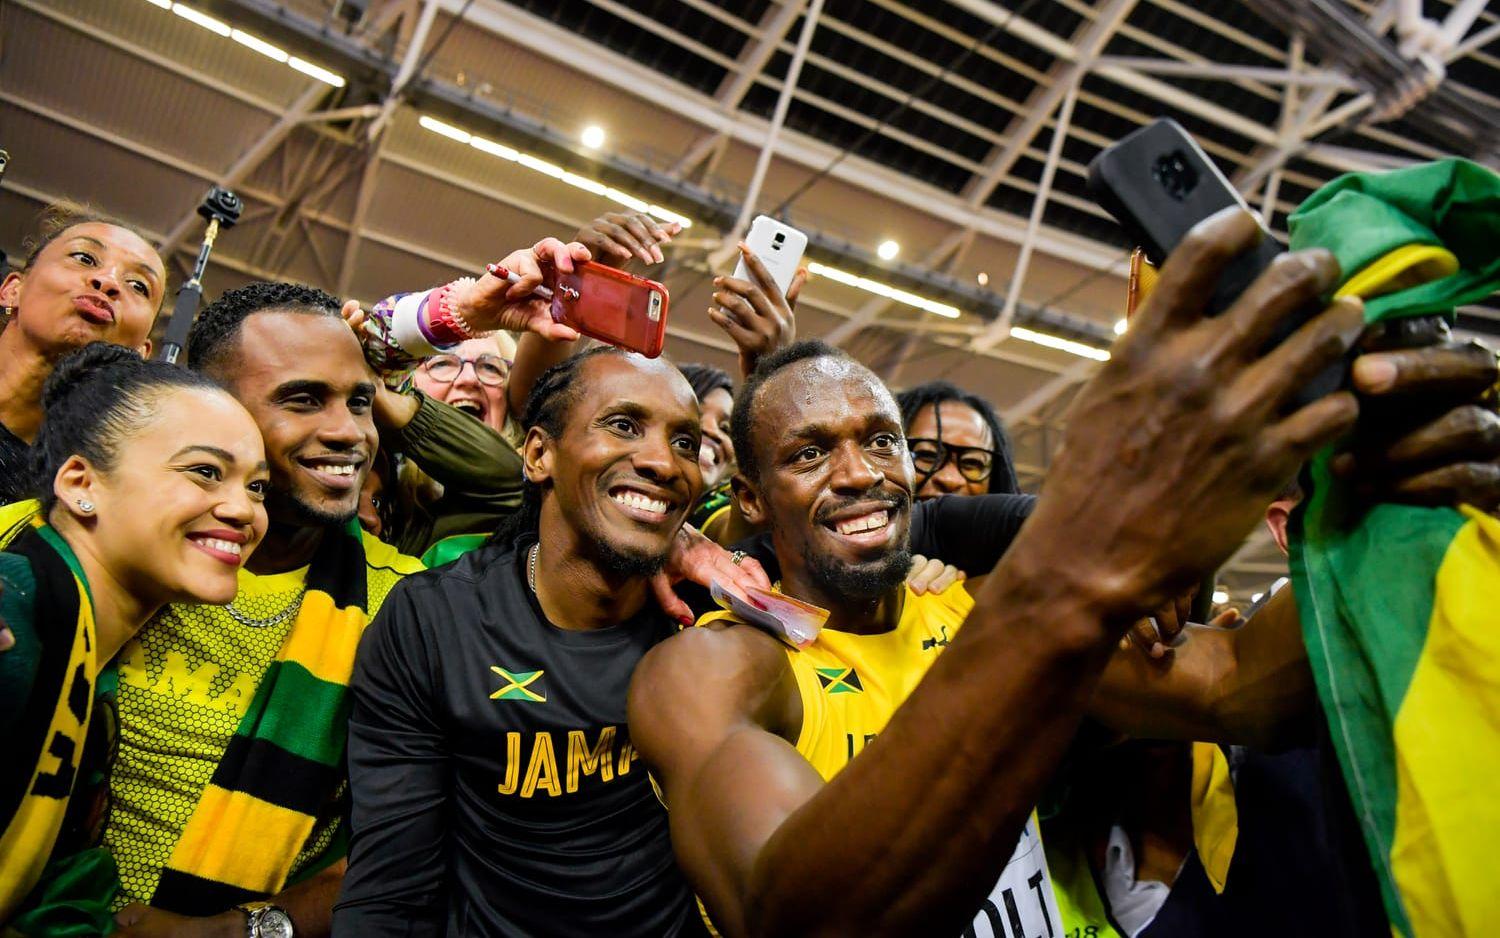 I VM-finalen – Bolts sista lopp i karriären blev det "bara" ett brons. Bild: Bildbyrån
